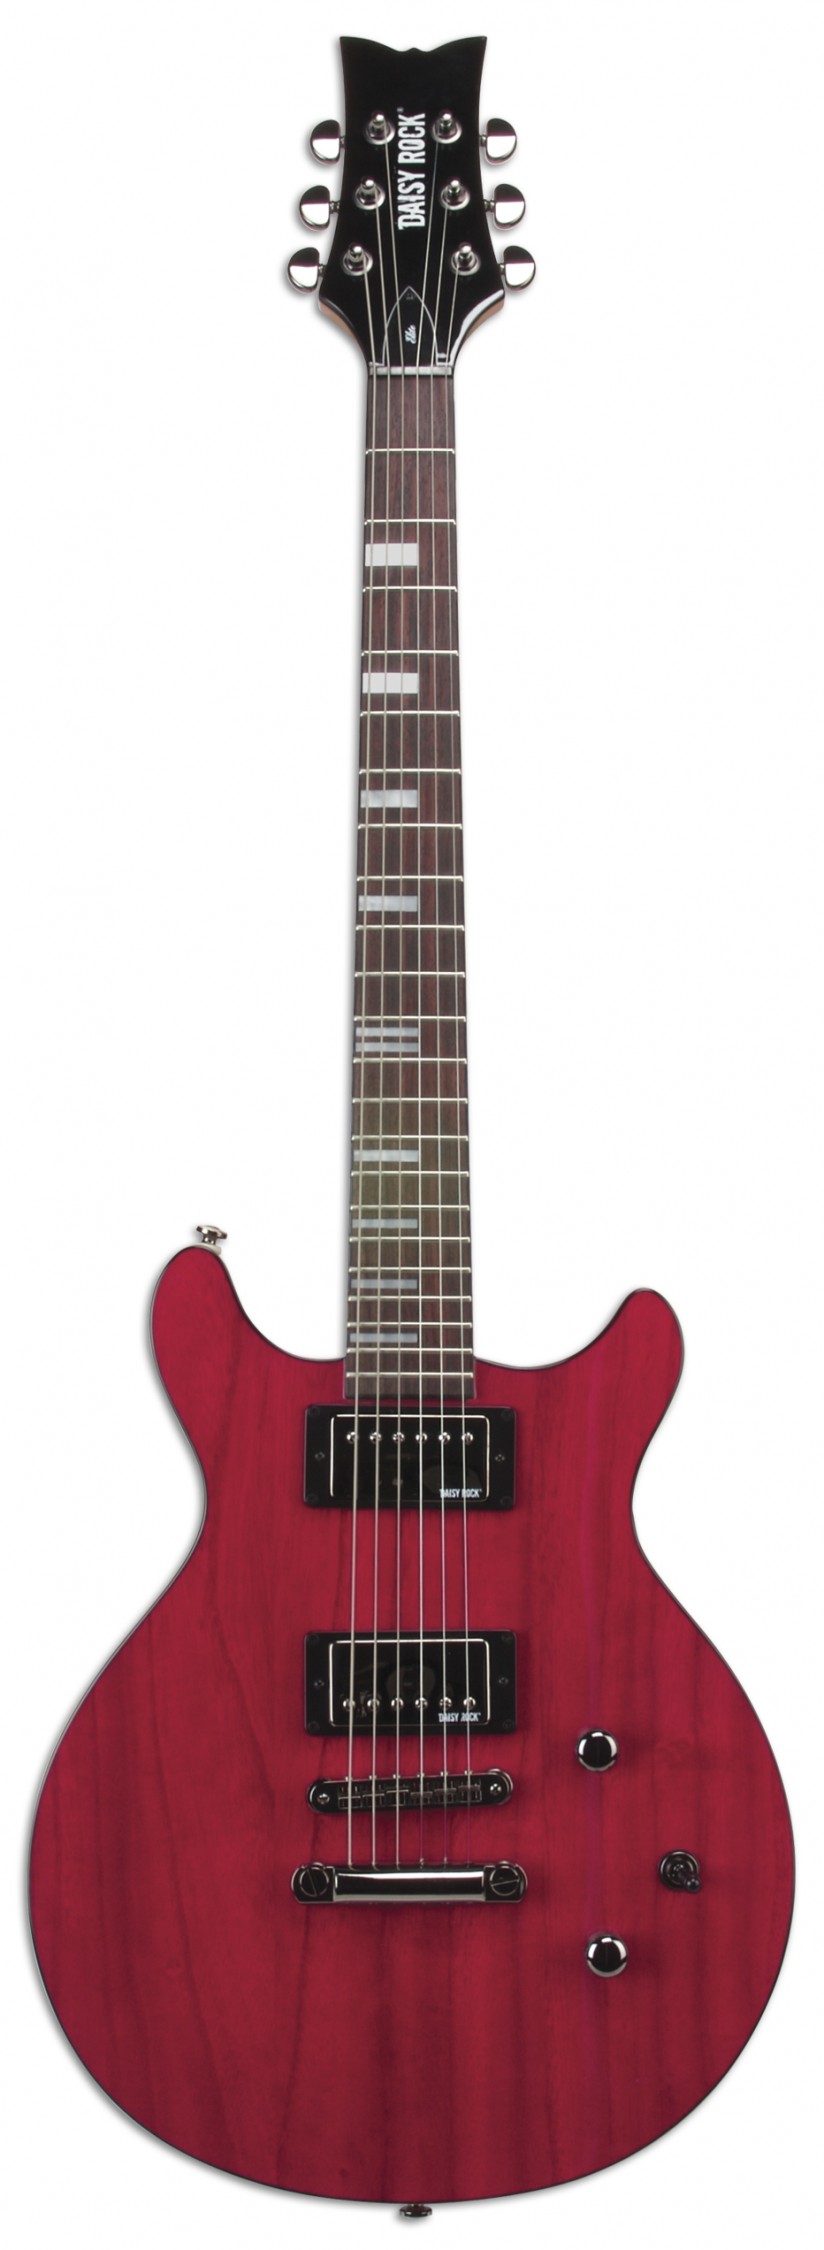 デイジー・ロック・ギターおよびベース15モデルを発売開始 | News 